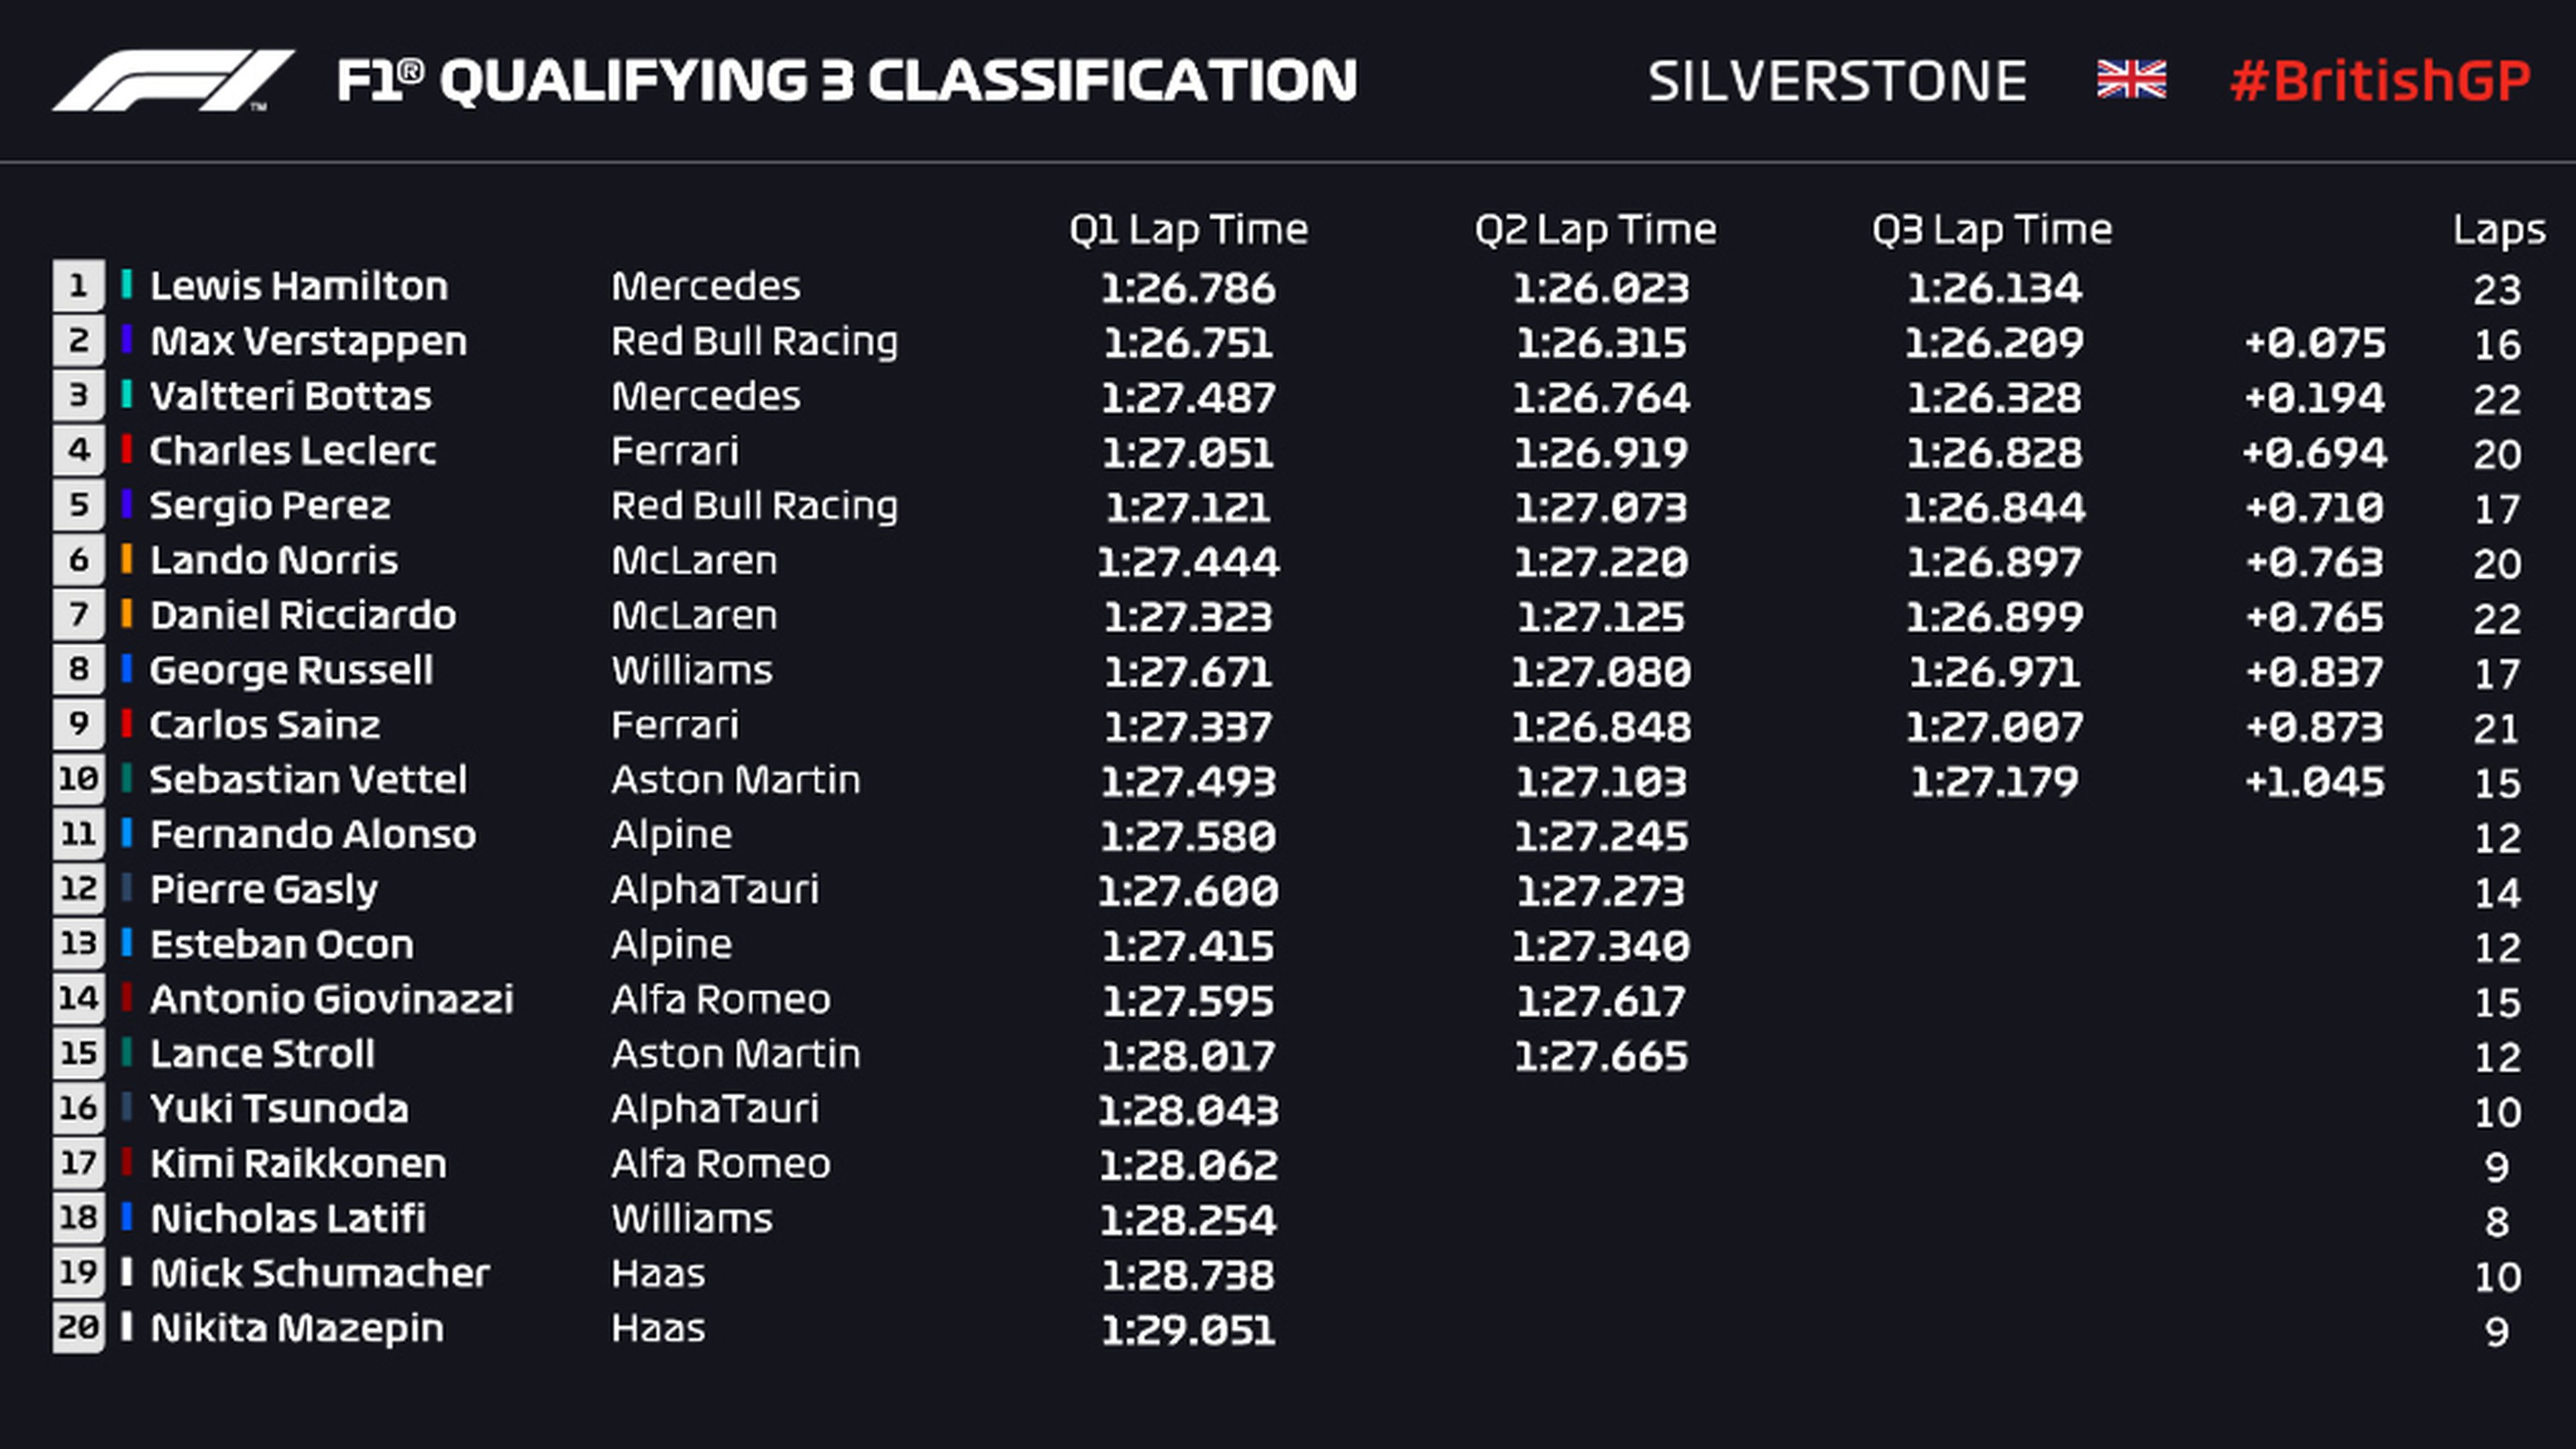 Clasificación F1 Silverstone 2021